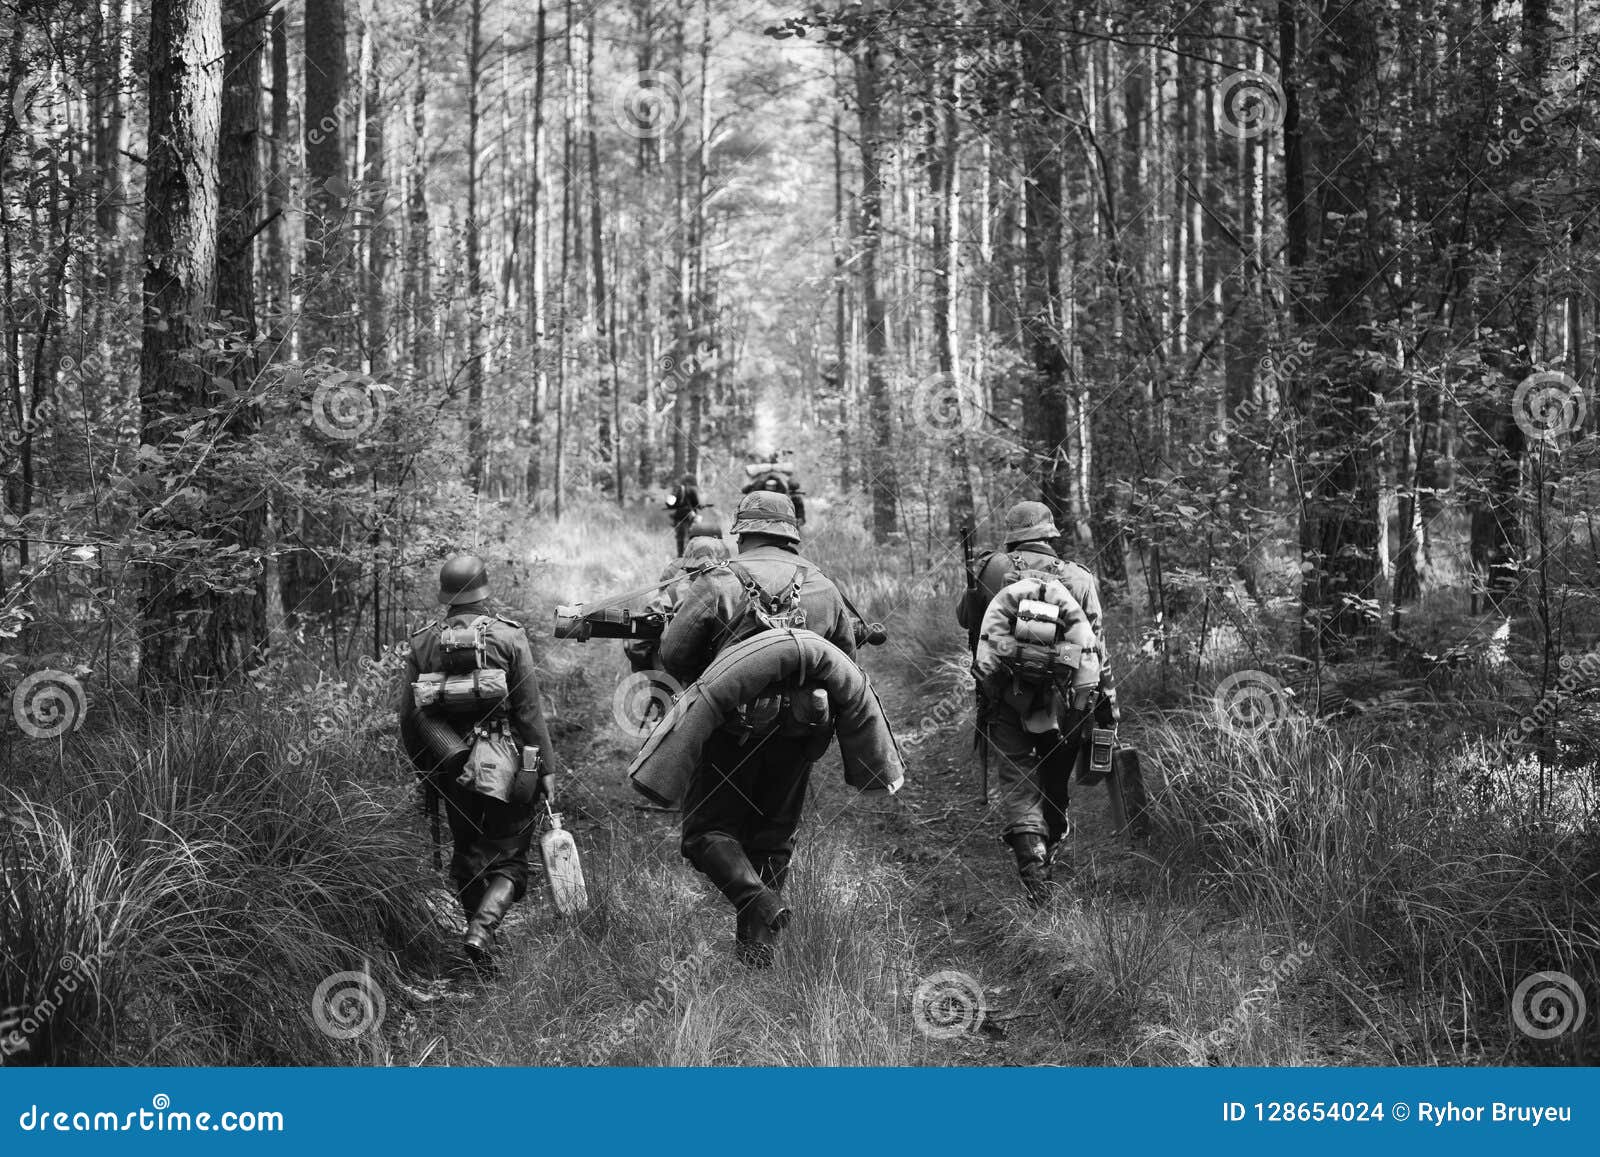 german infantry soldiers in world war ii marching walking along